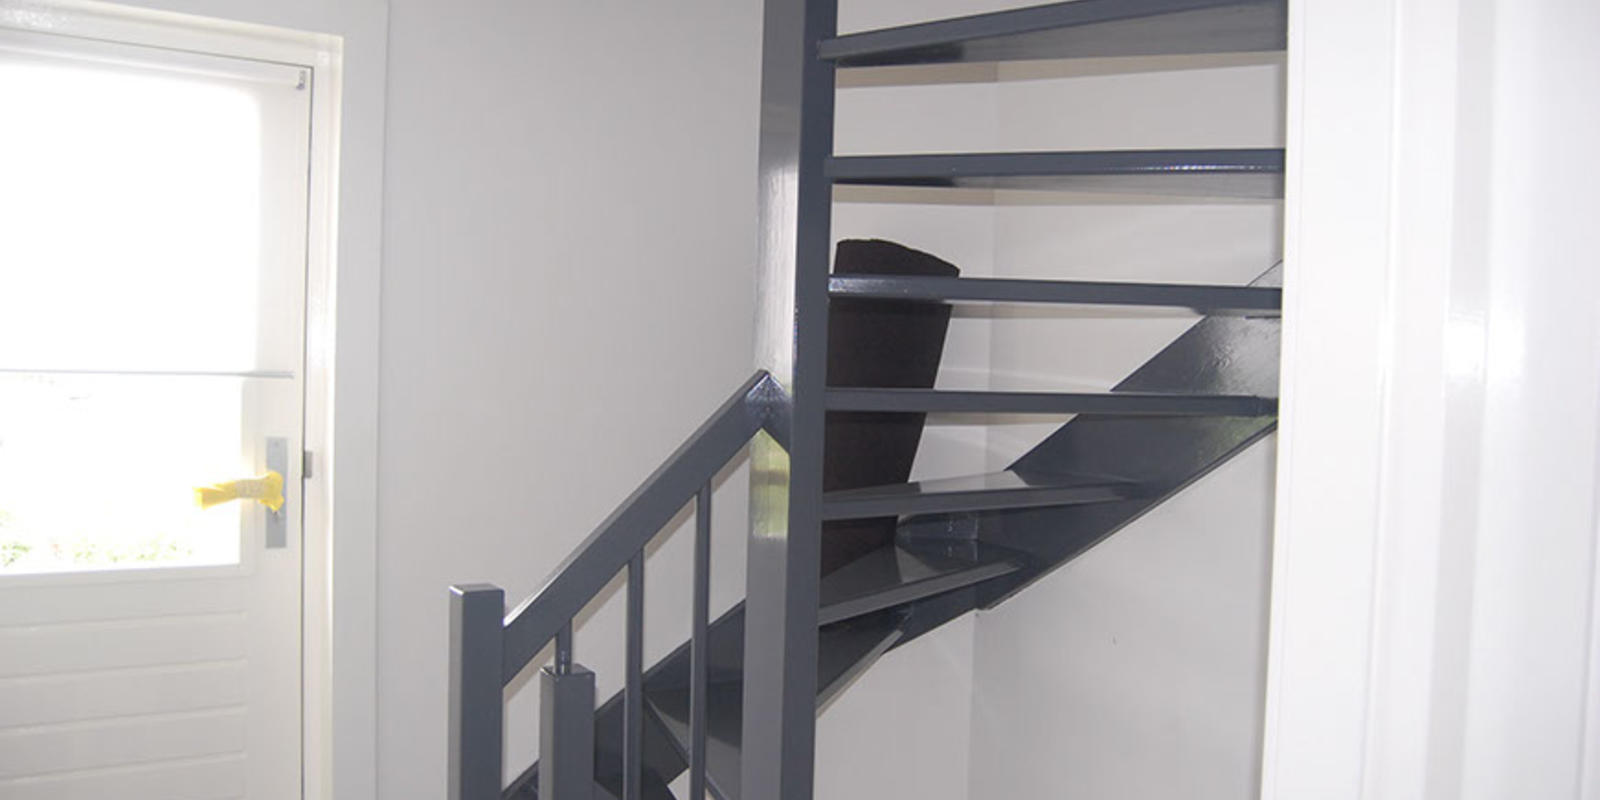 Hoe schilder je een trap? 🎨Tips voor je deur schilderen zonder